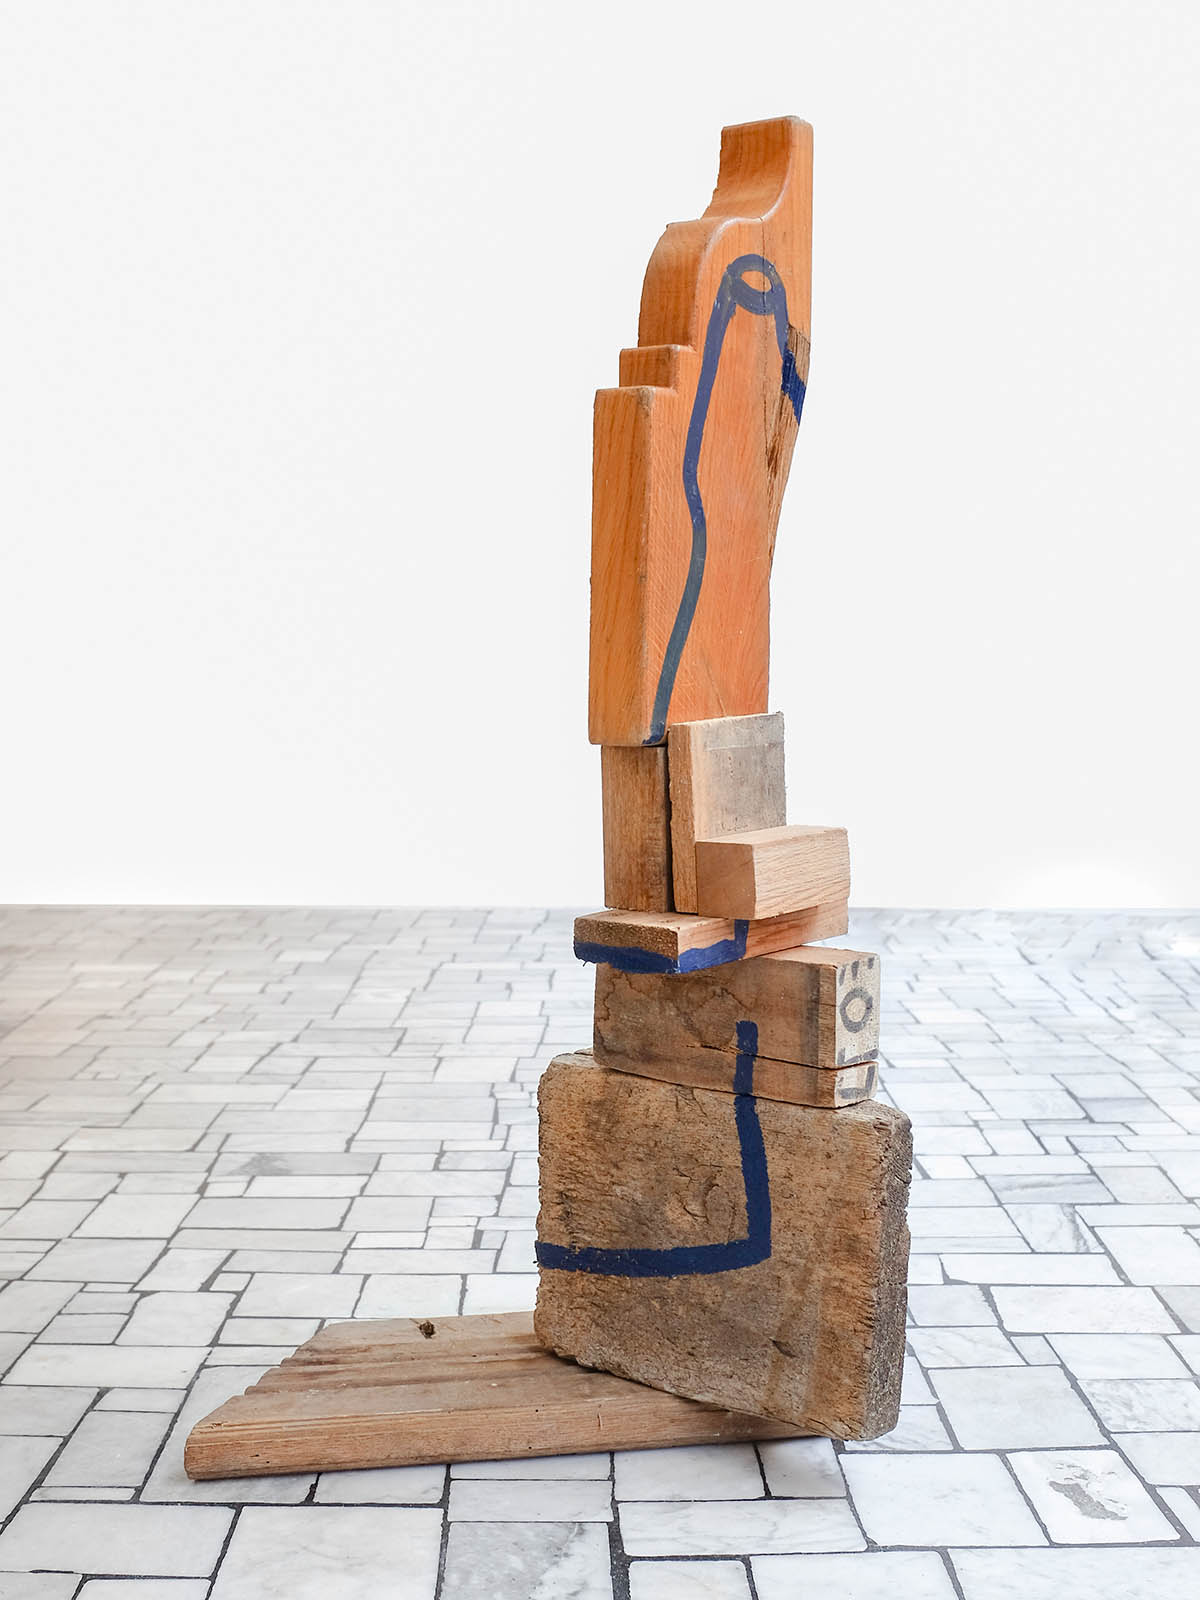 Matteo Messori, Anziani Saggi I, 2021, Sculpture, Acrylic on wood, 85 (h) x 41 (w) x 30 (d) cm